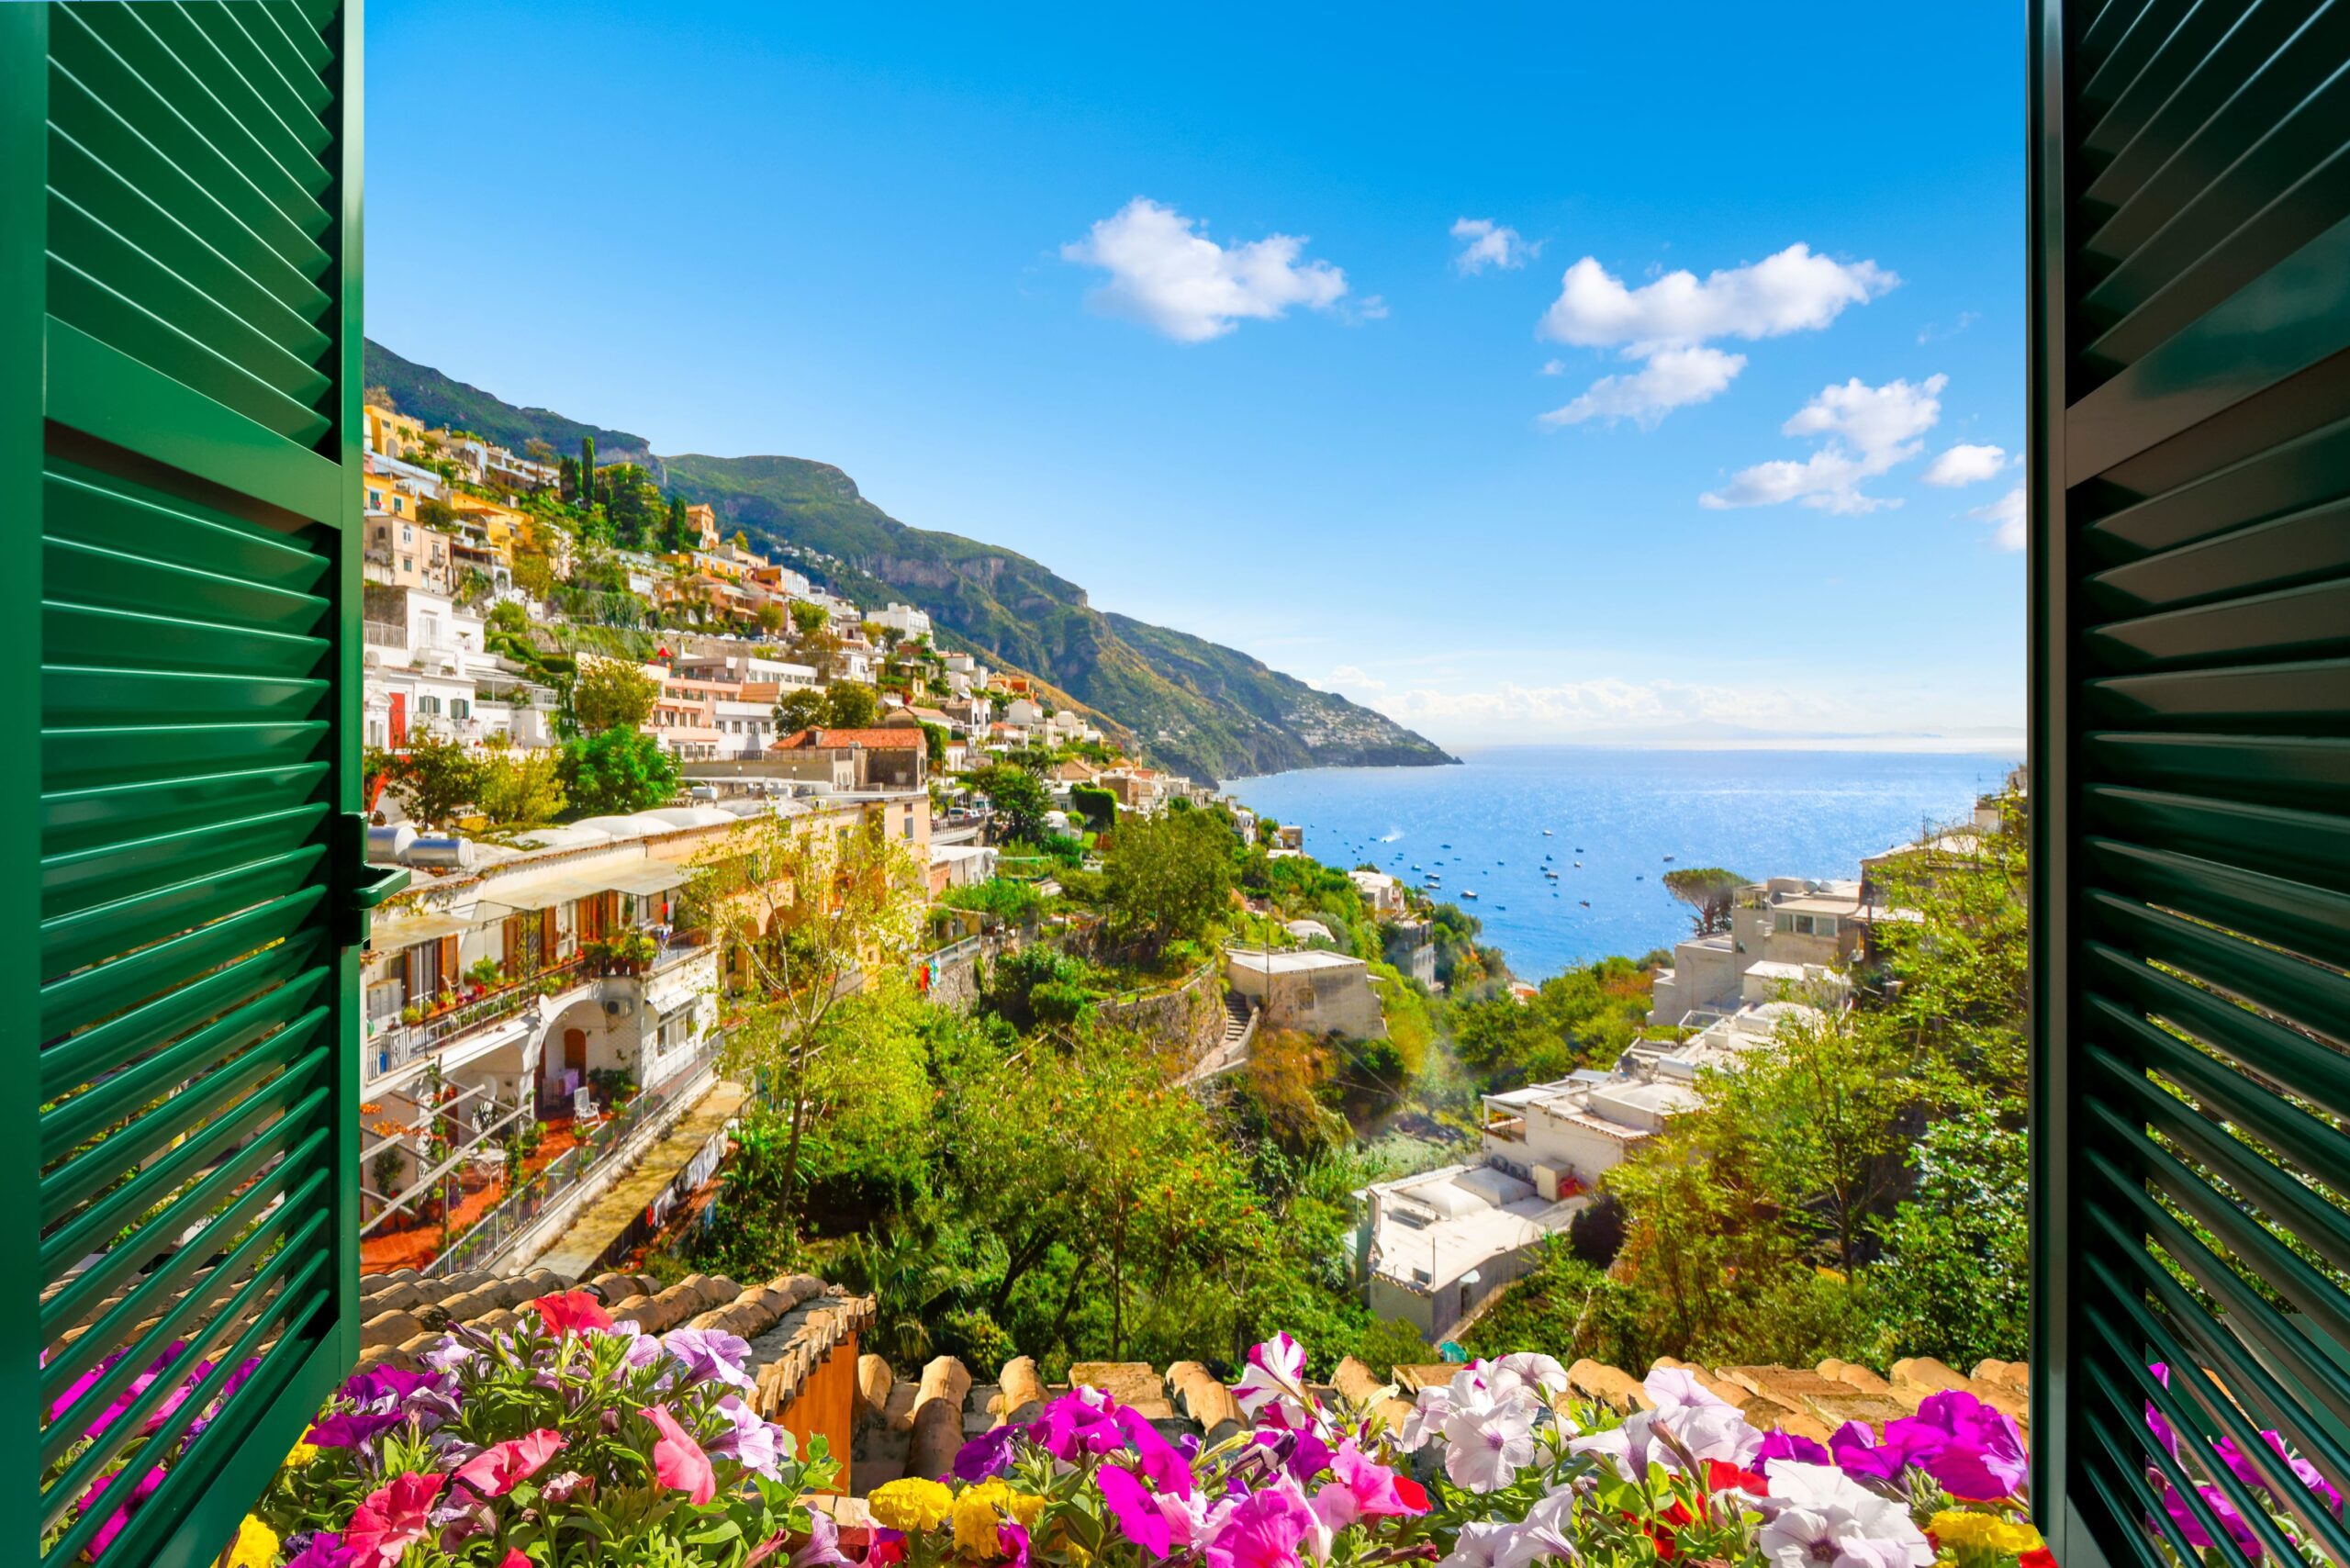 Amalfi Kıyıları